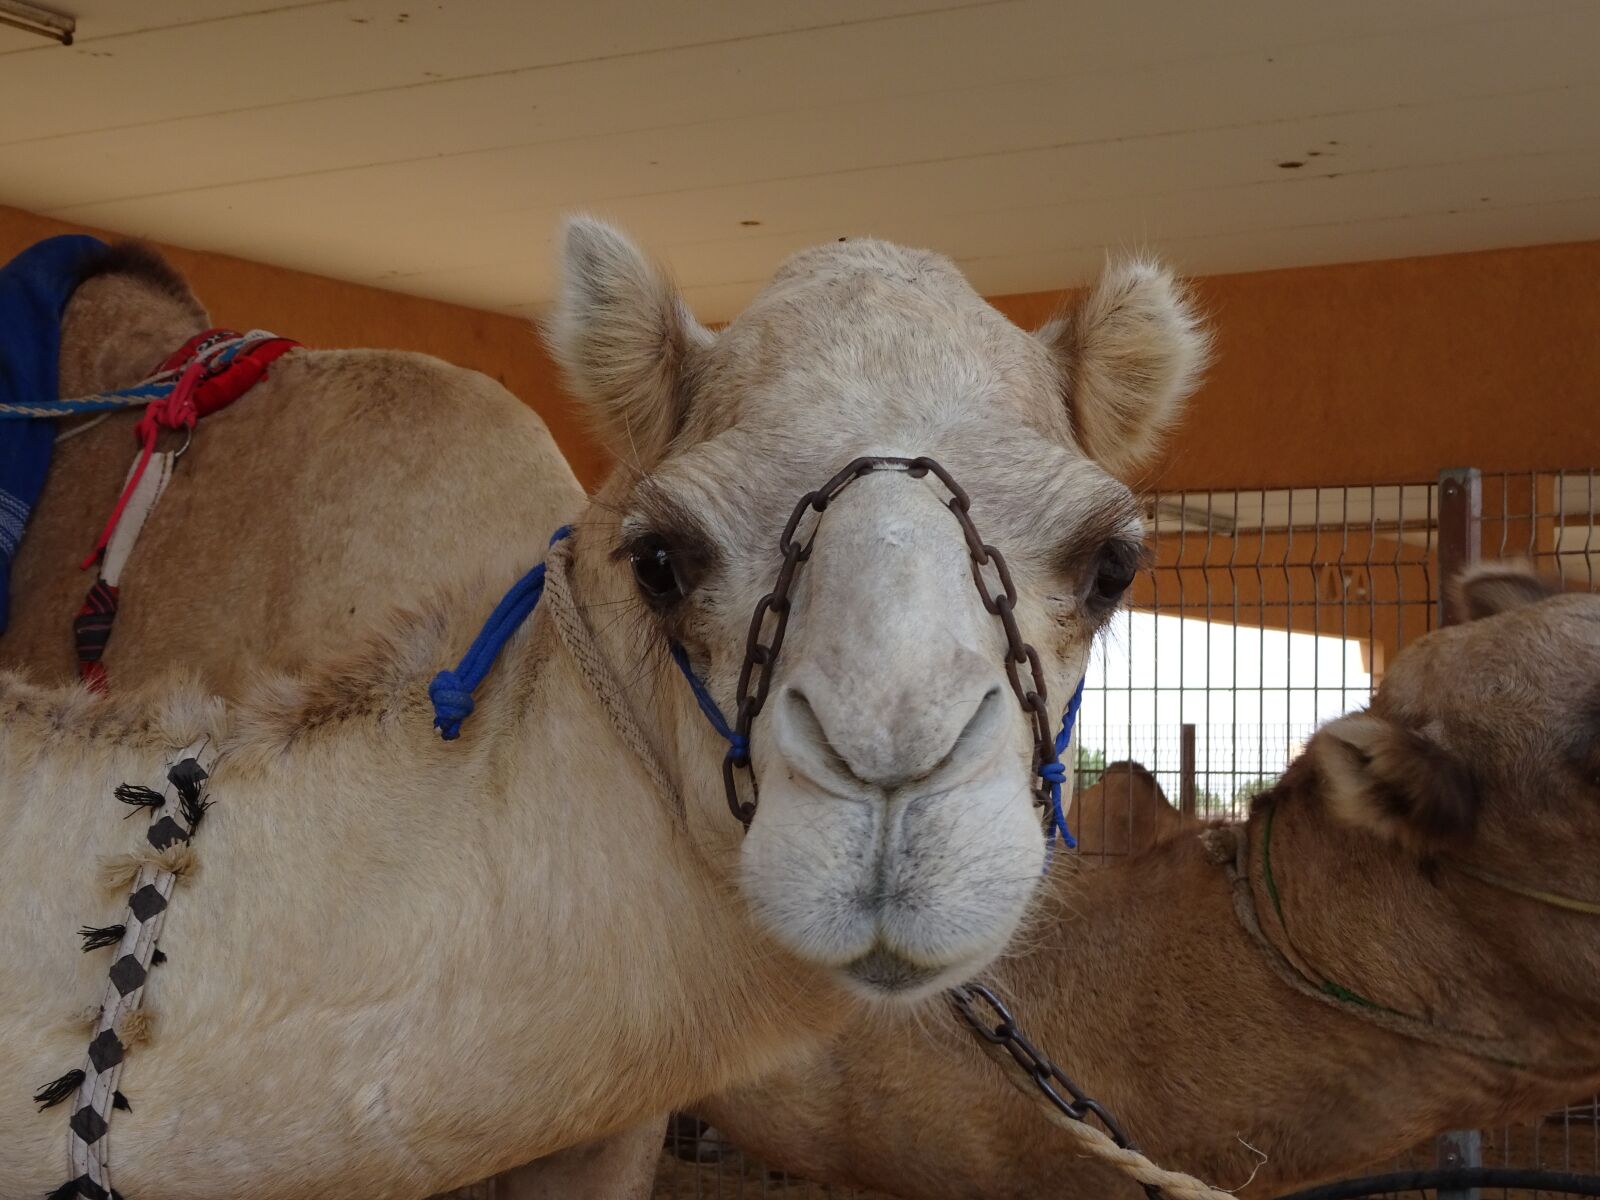 Sony Cyber-shot DSC-HX90V sample photo. Camel farm, camel face photography